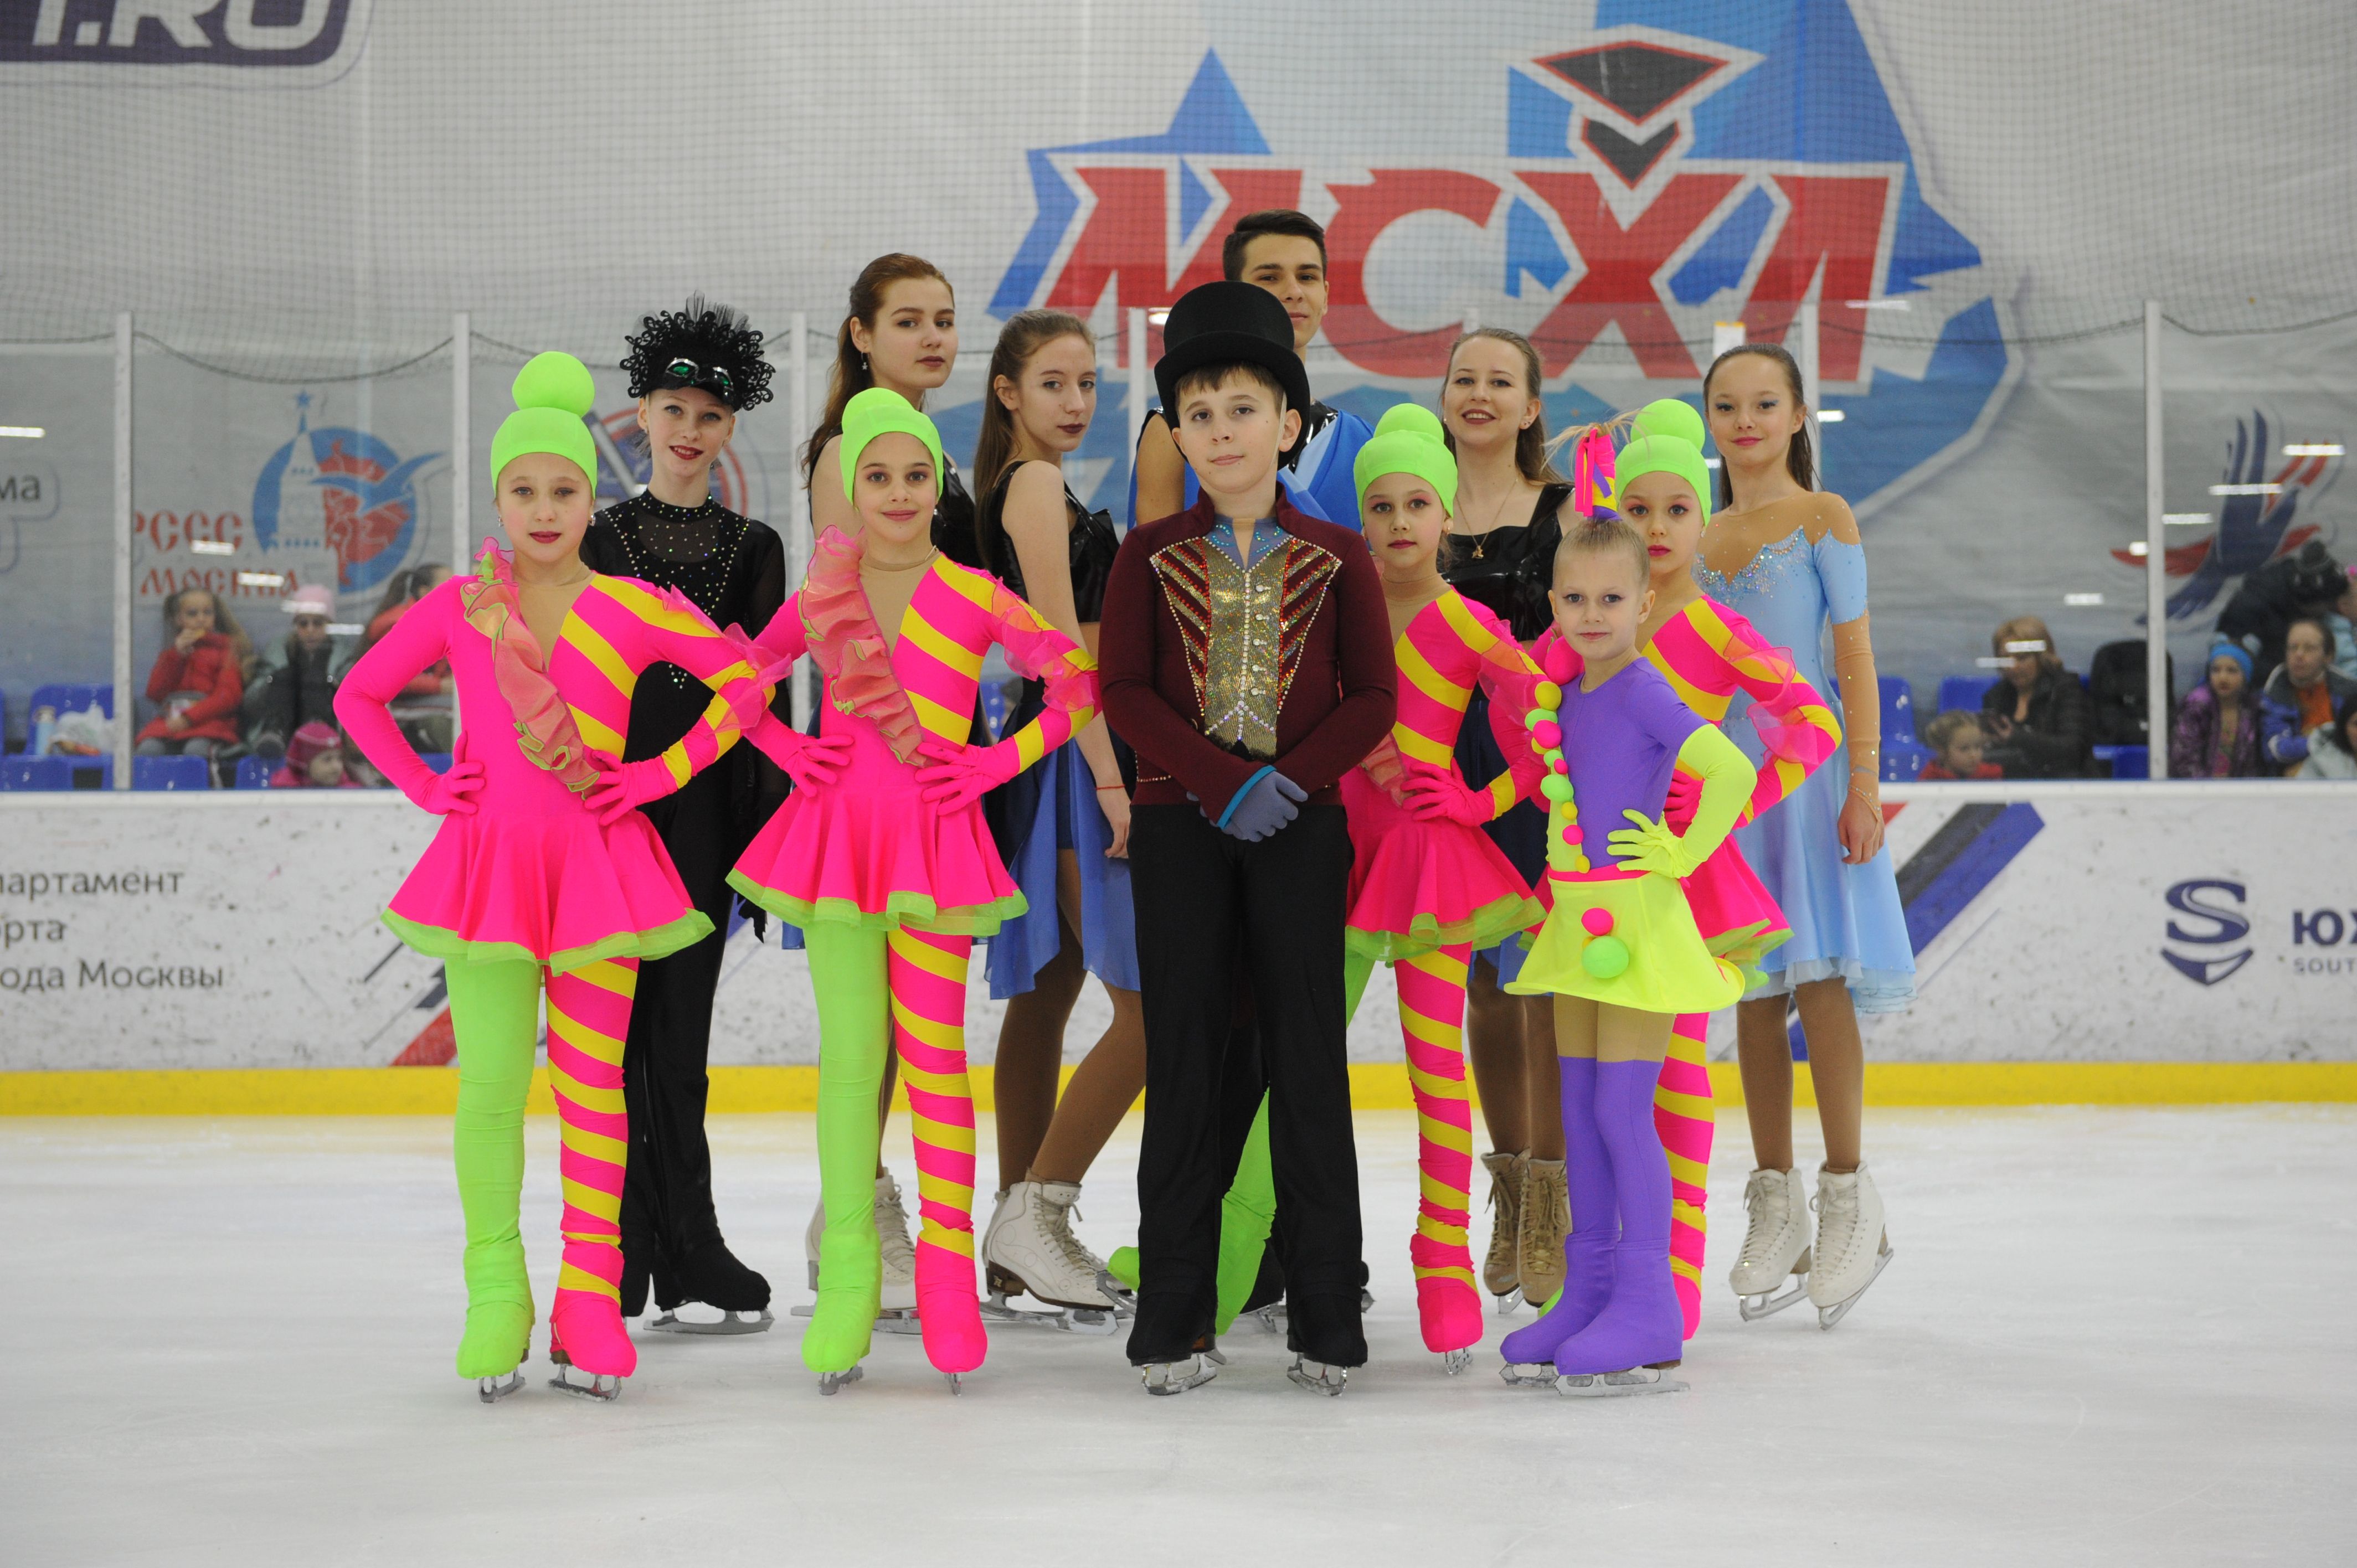 Балет на льду продемонстрировали танцевальные коллективы на соревнованиях в Щербинке